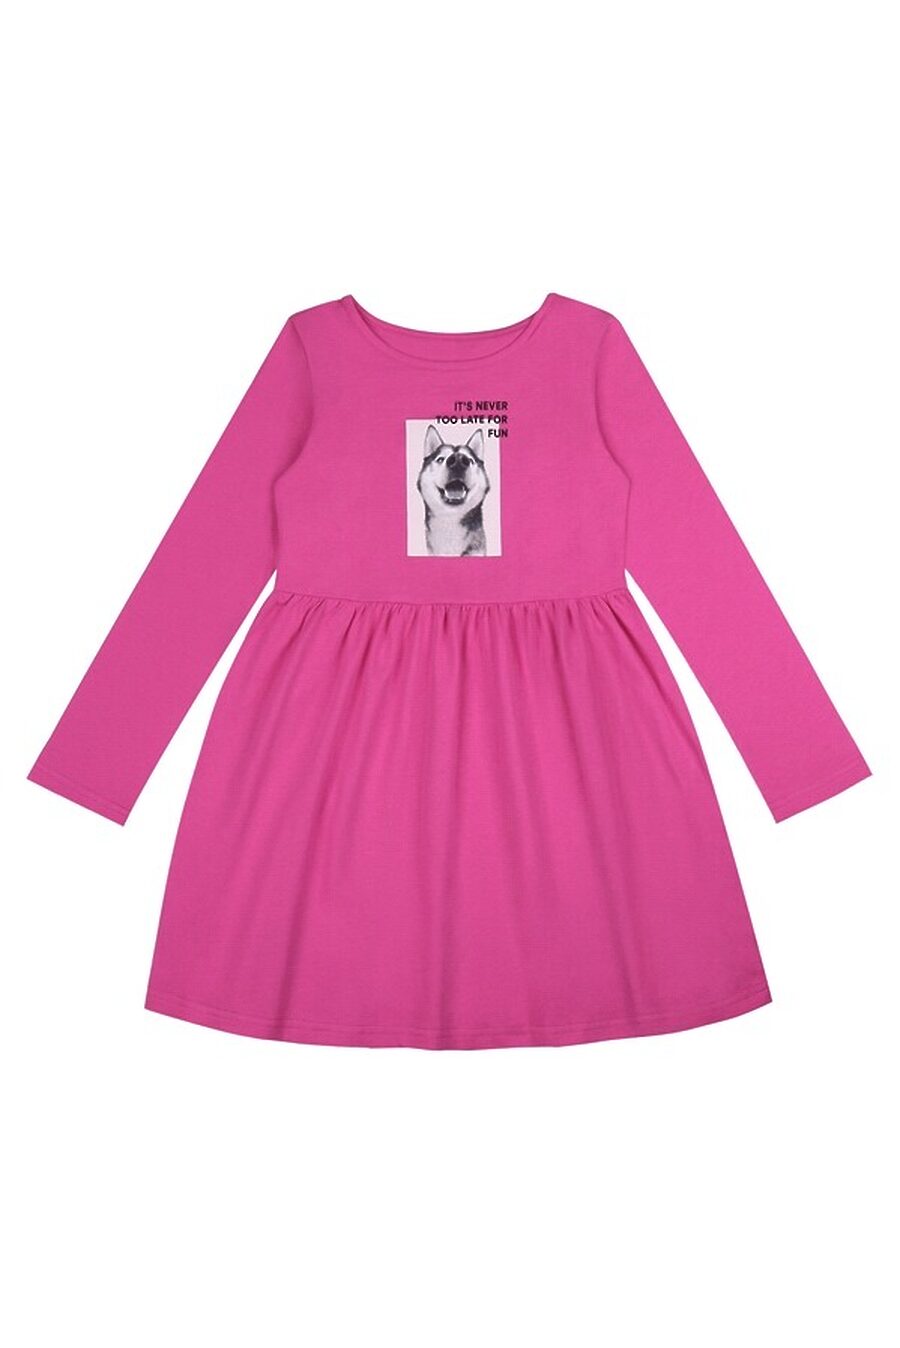 Платье для девочек АПРЕЛЬ 807640 купить оптом от производителя. Совместная покупка детской одежды в OptMoyo